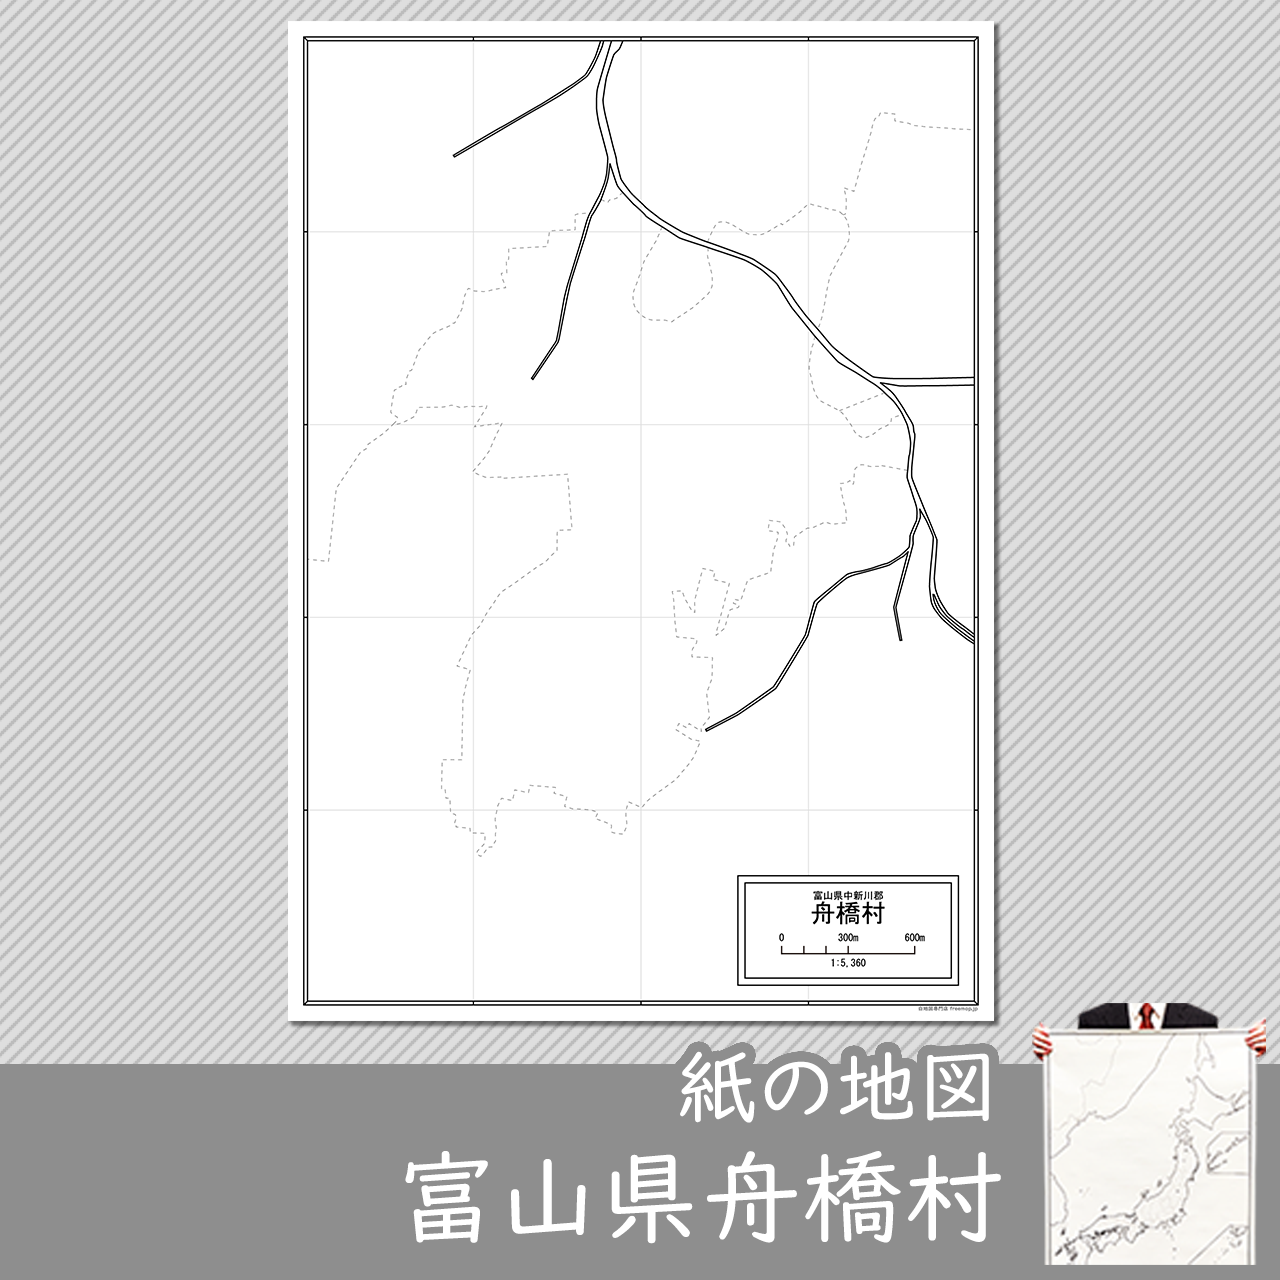 舟橋村の紙の白地図のサムネイル